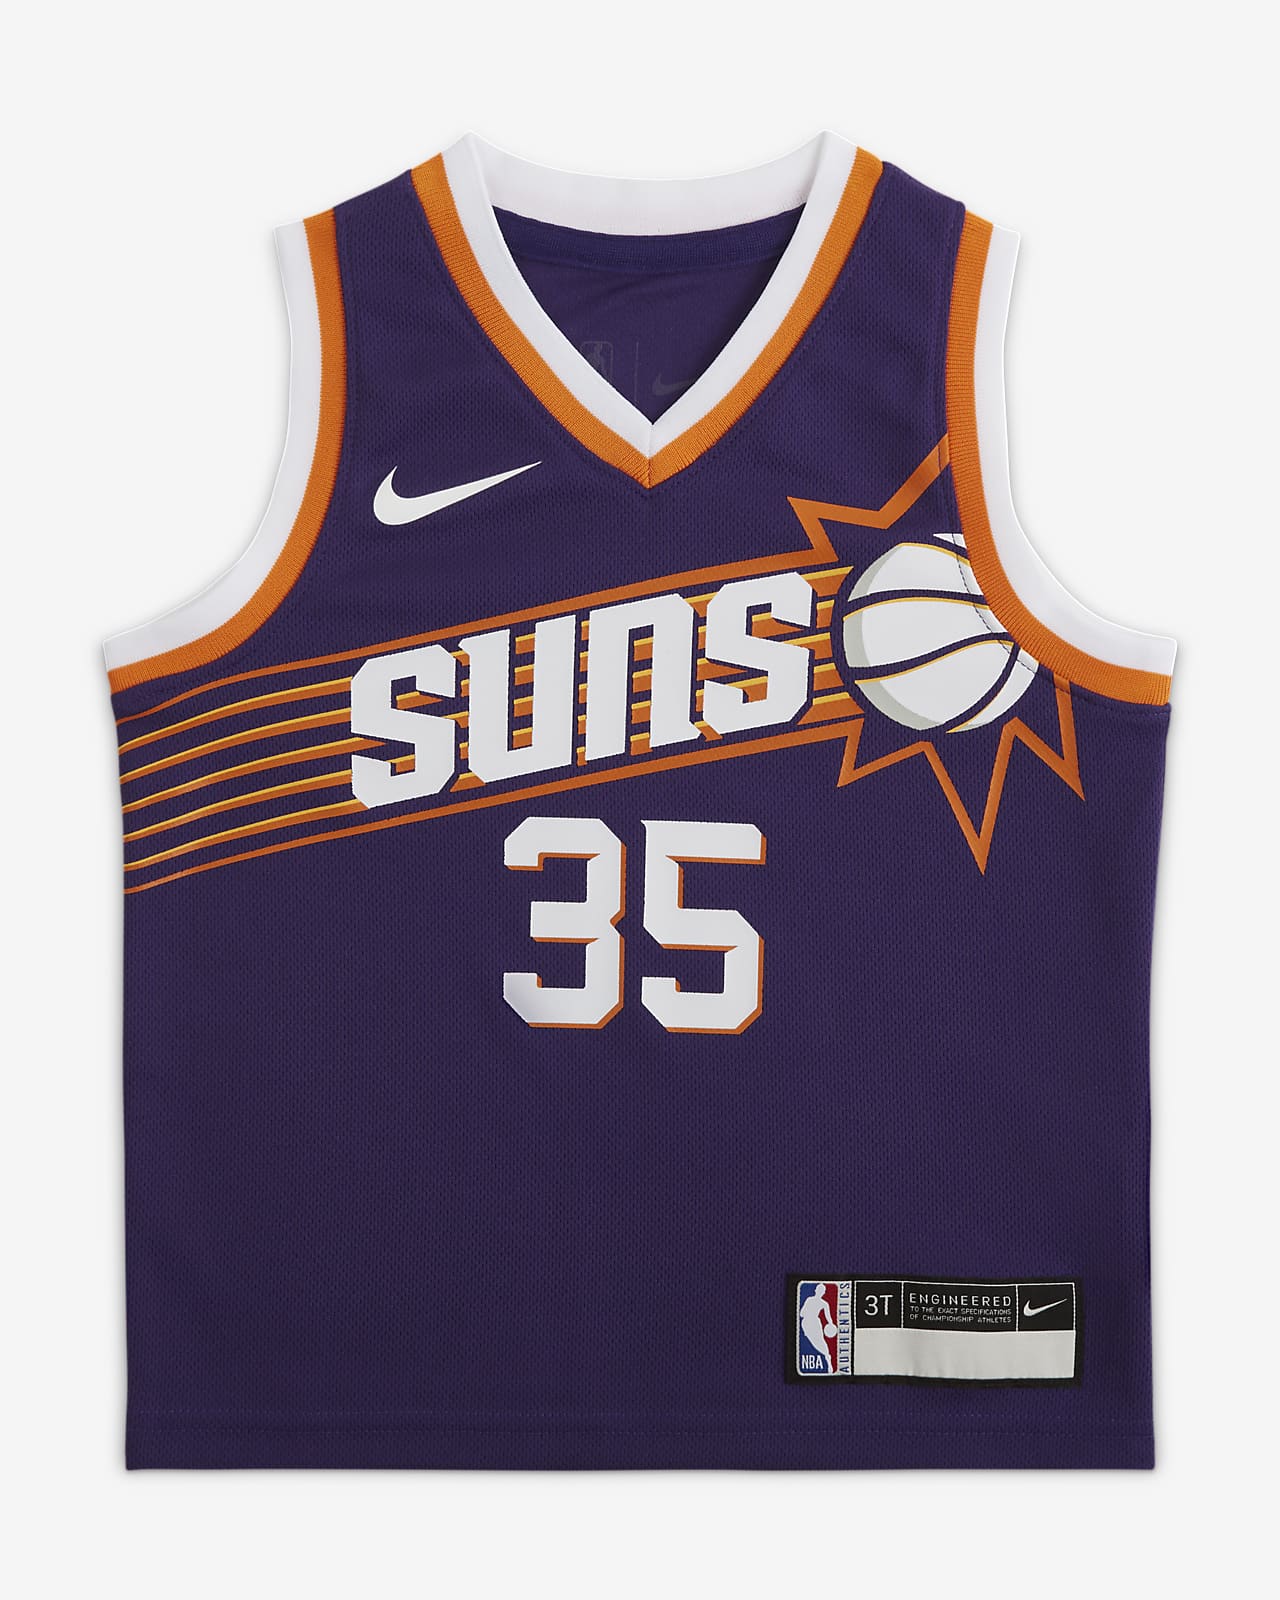 菲尼克斯太阳队 (Kevin Durant) Nike NBA Jersey 婴童球衣